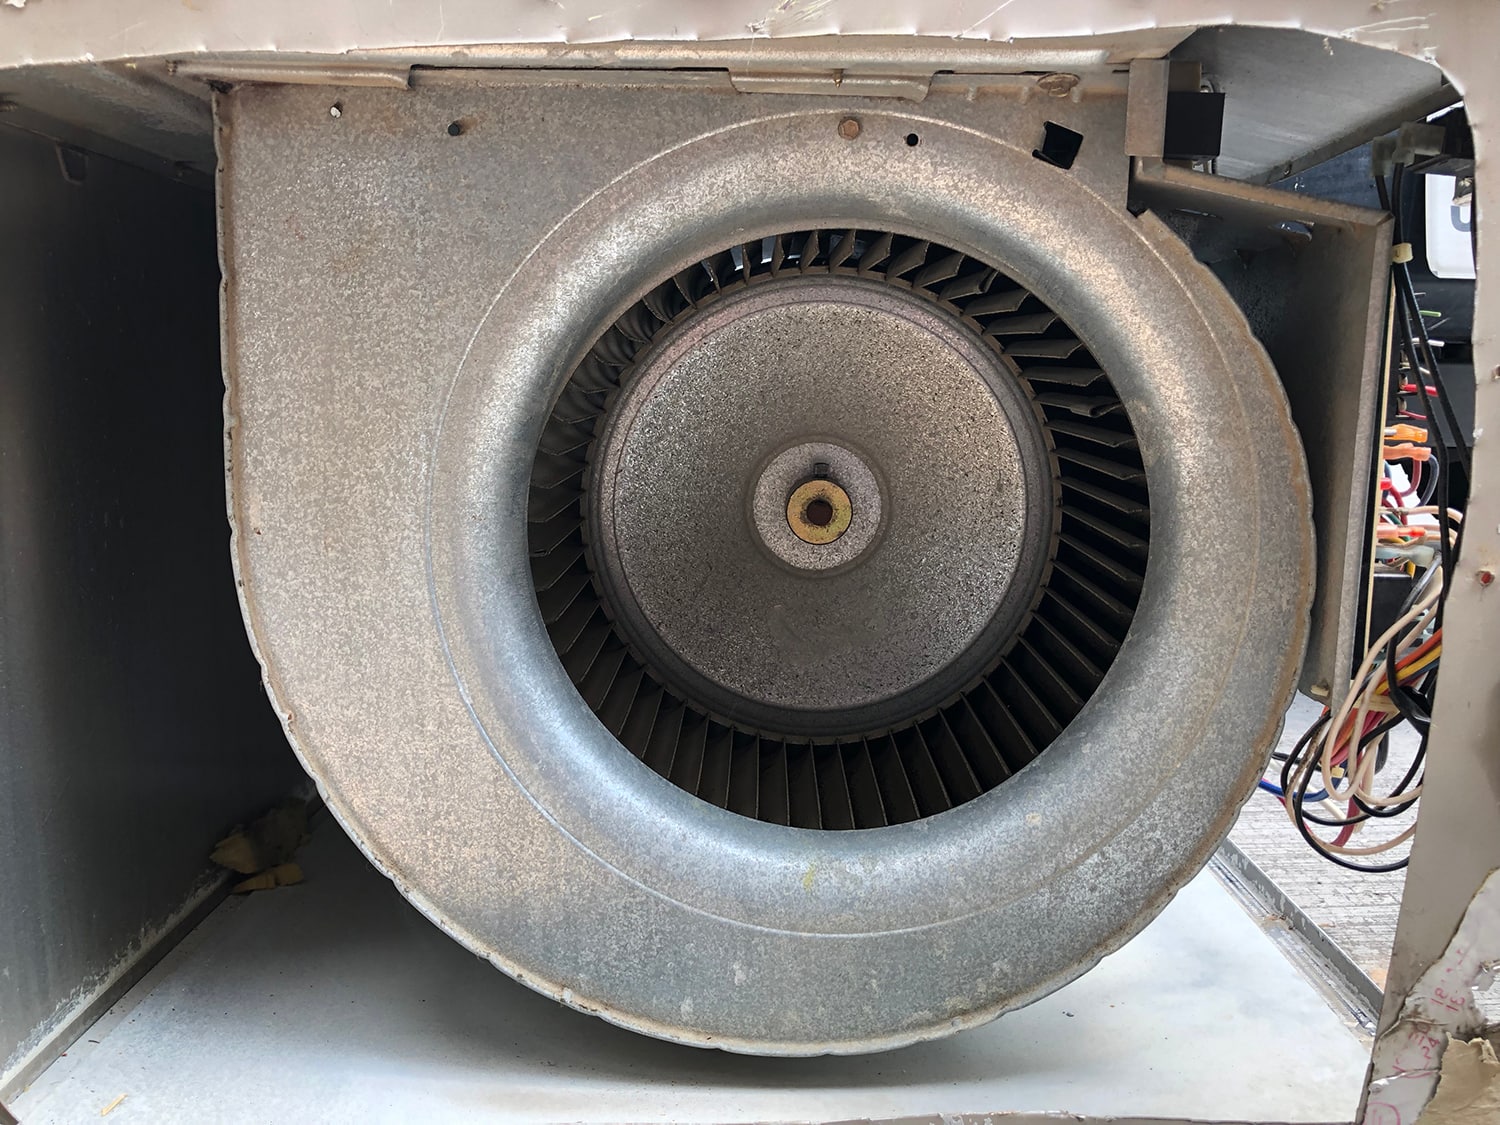 HVAC blower motor of an air handler